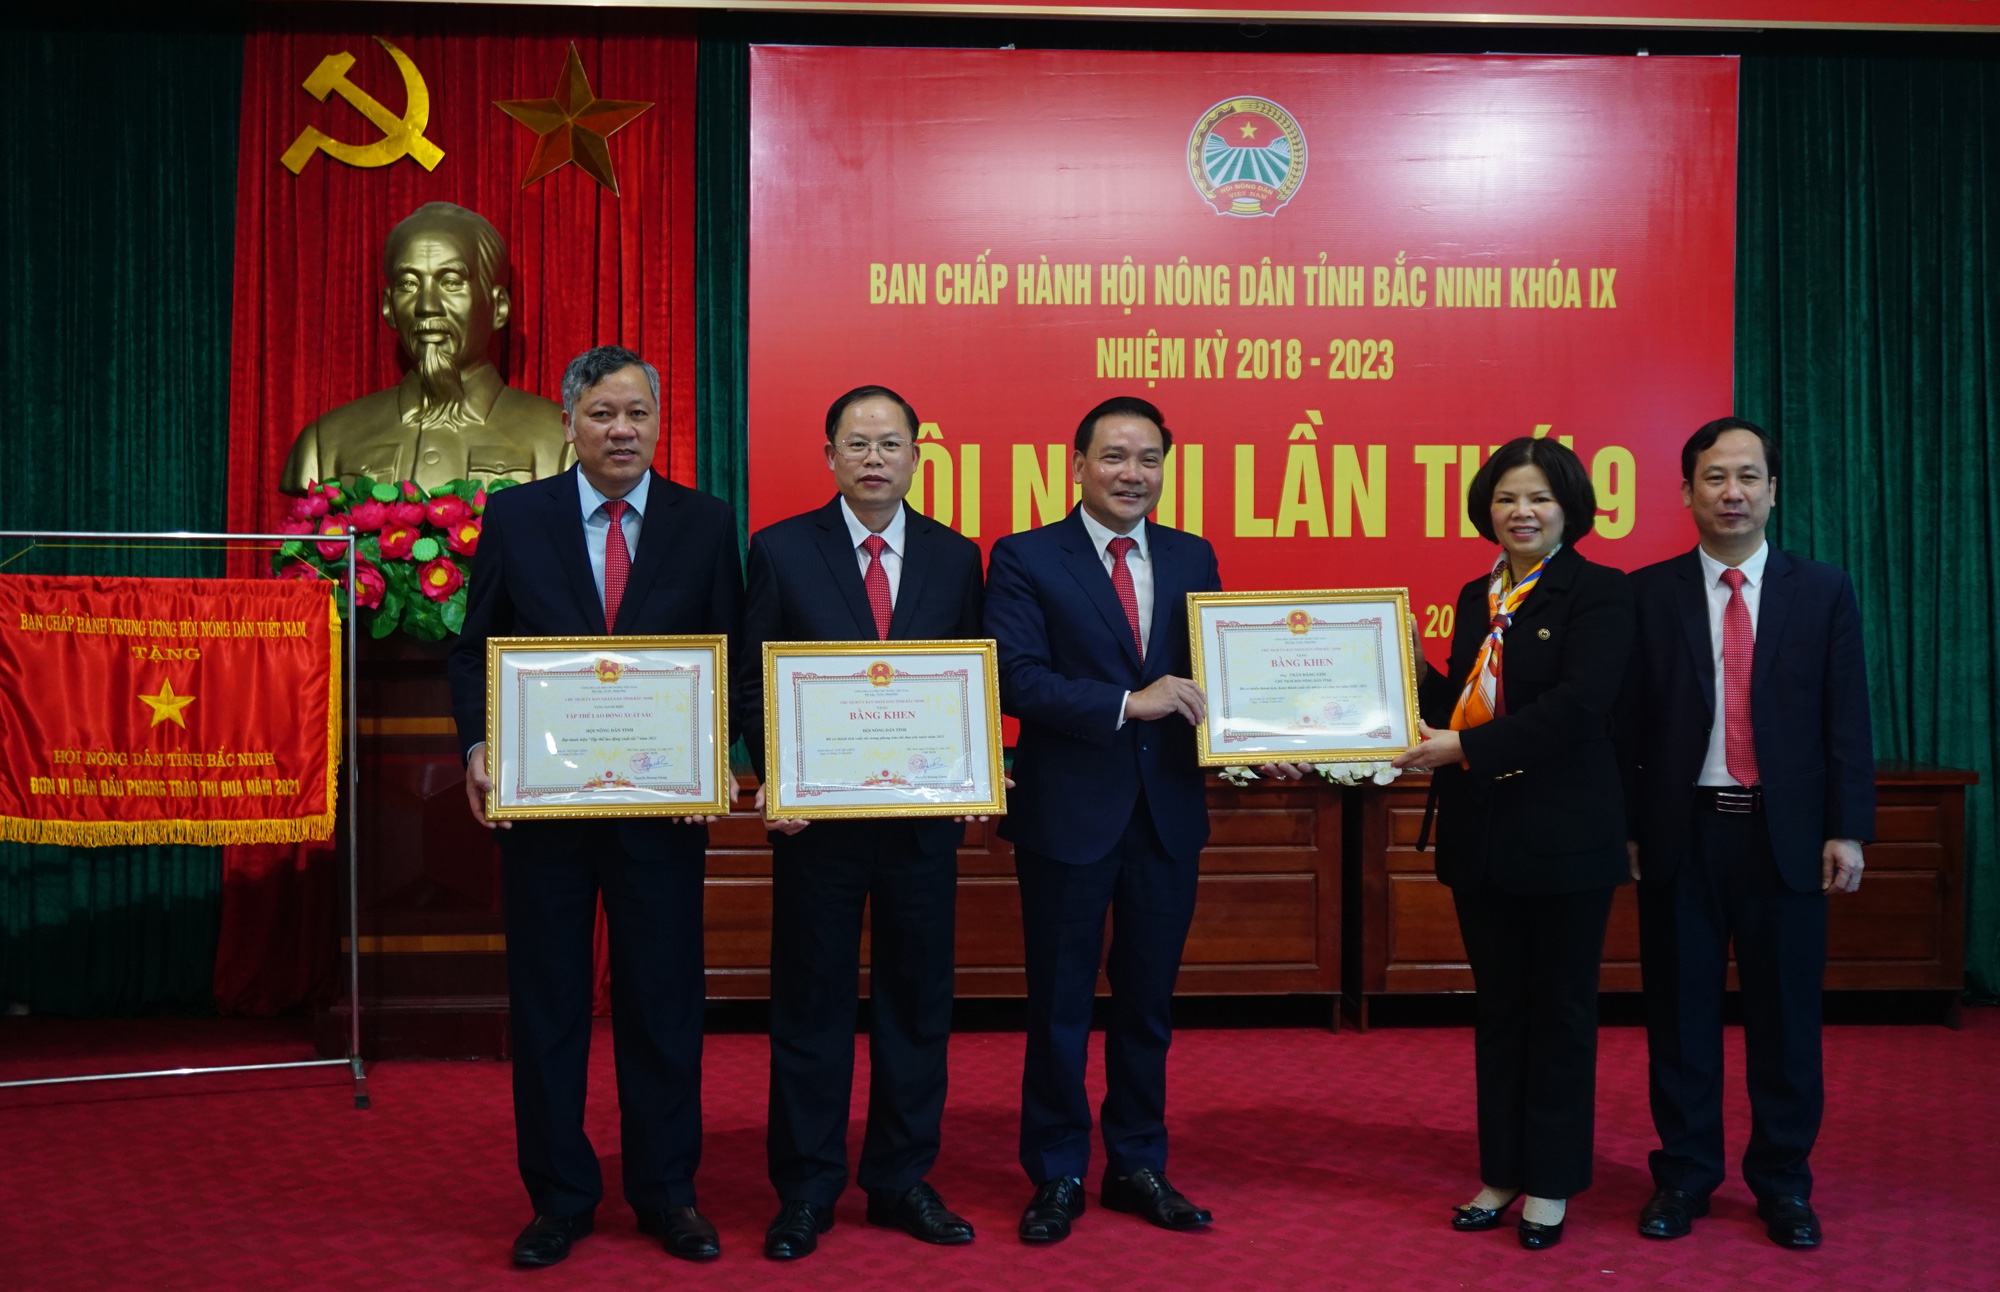 Hội Nông dân tỉnh Bắc Ninh: Một năm hoạt động sôi nổi, được trao tặng Cờ đơn vị dẫn đầu phong trào thi đua - Ảnh 6.